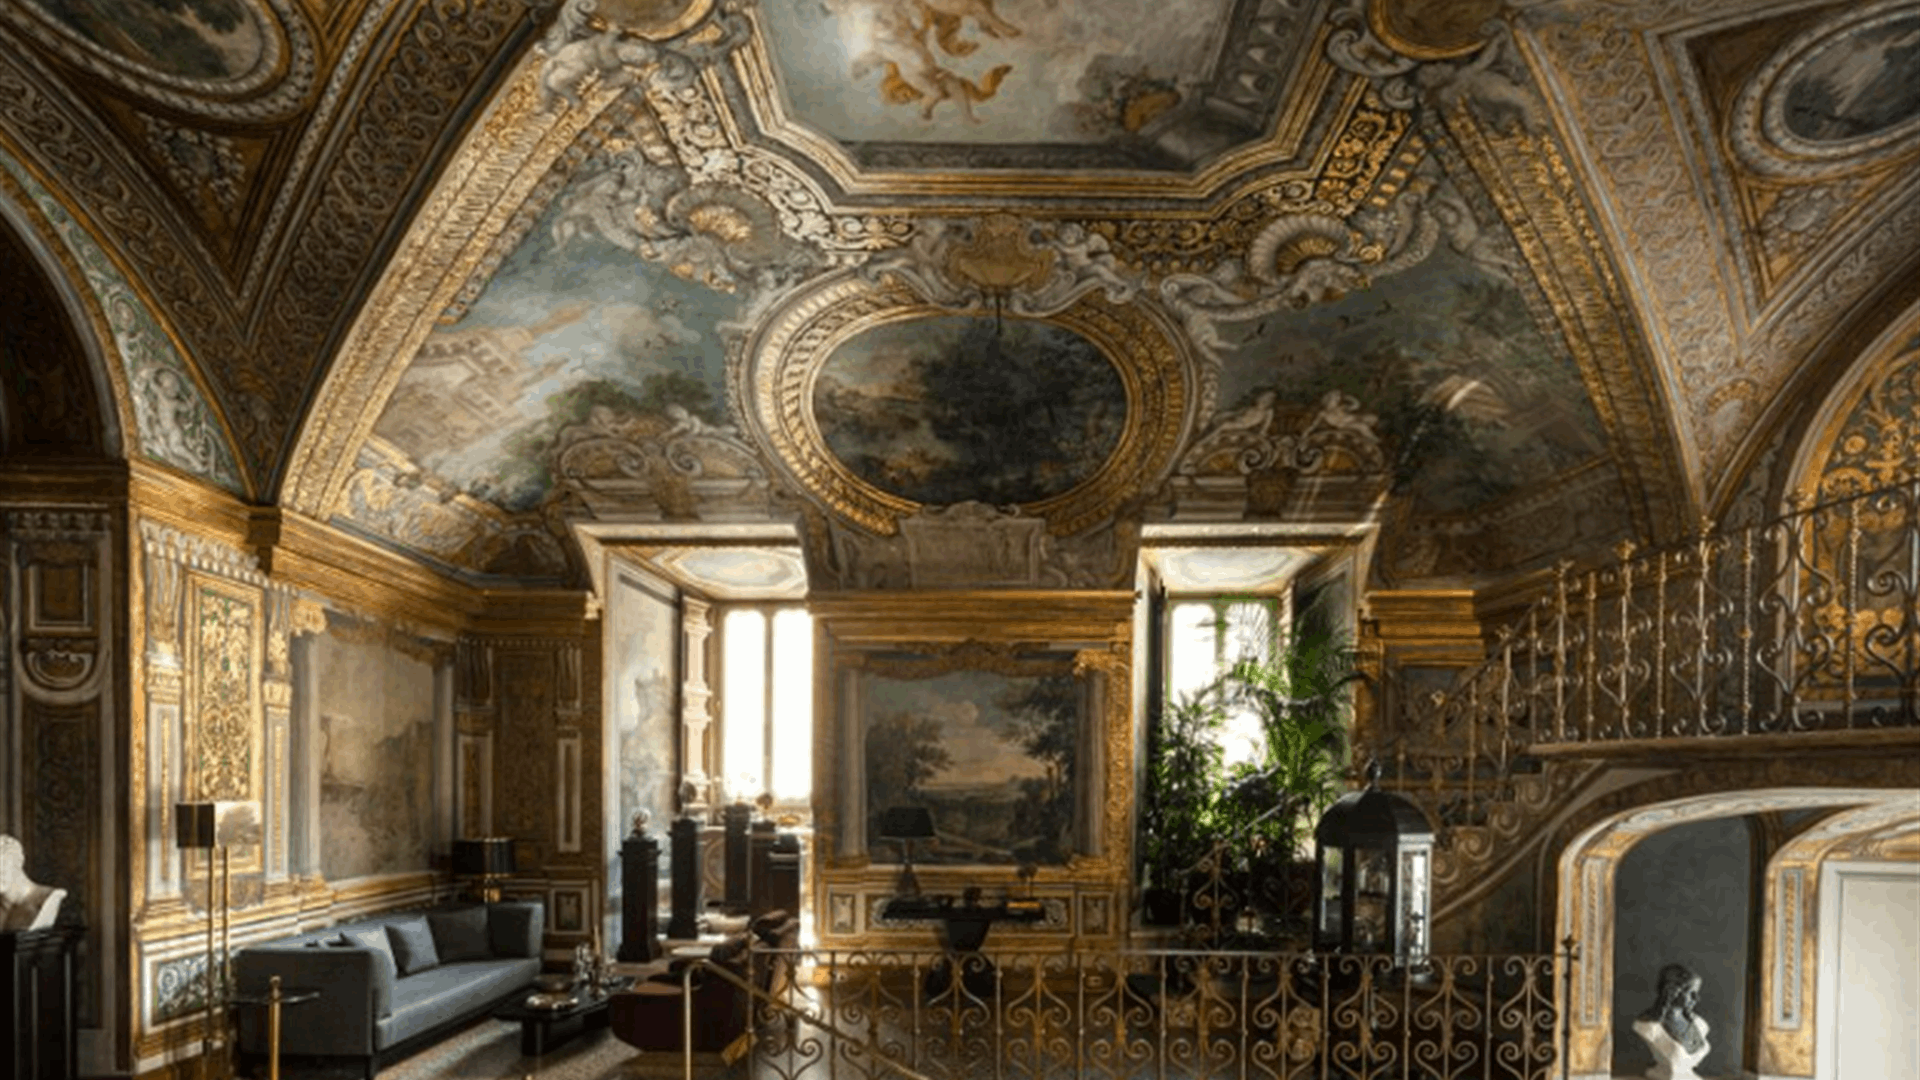 قصر تاريخي مذهل يفتح أبوابه للضيوف الذين يبيتون في روما بكلفة ضخمة... اكتشفوا Palazzo Vilòn!